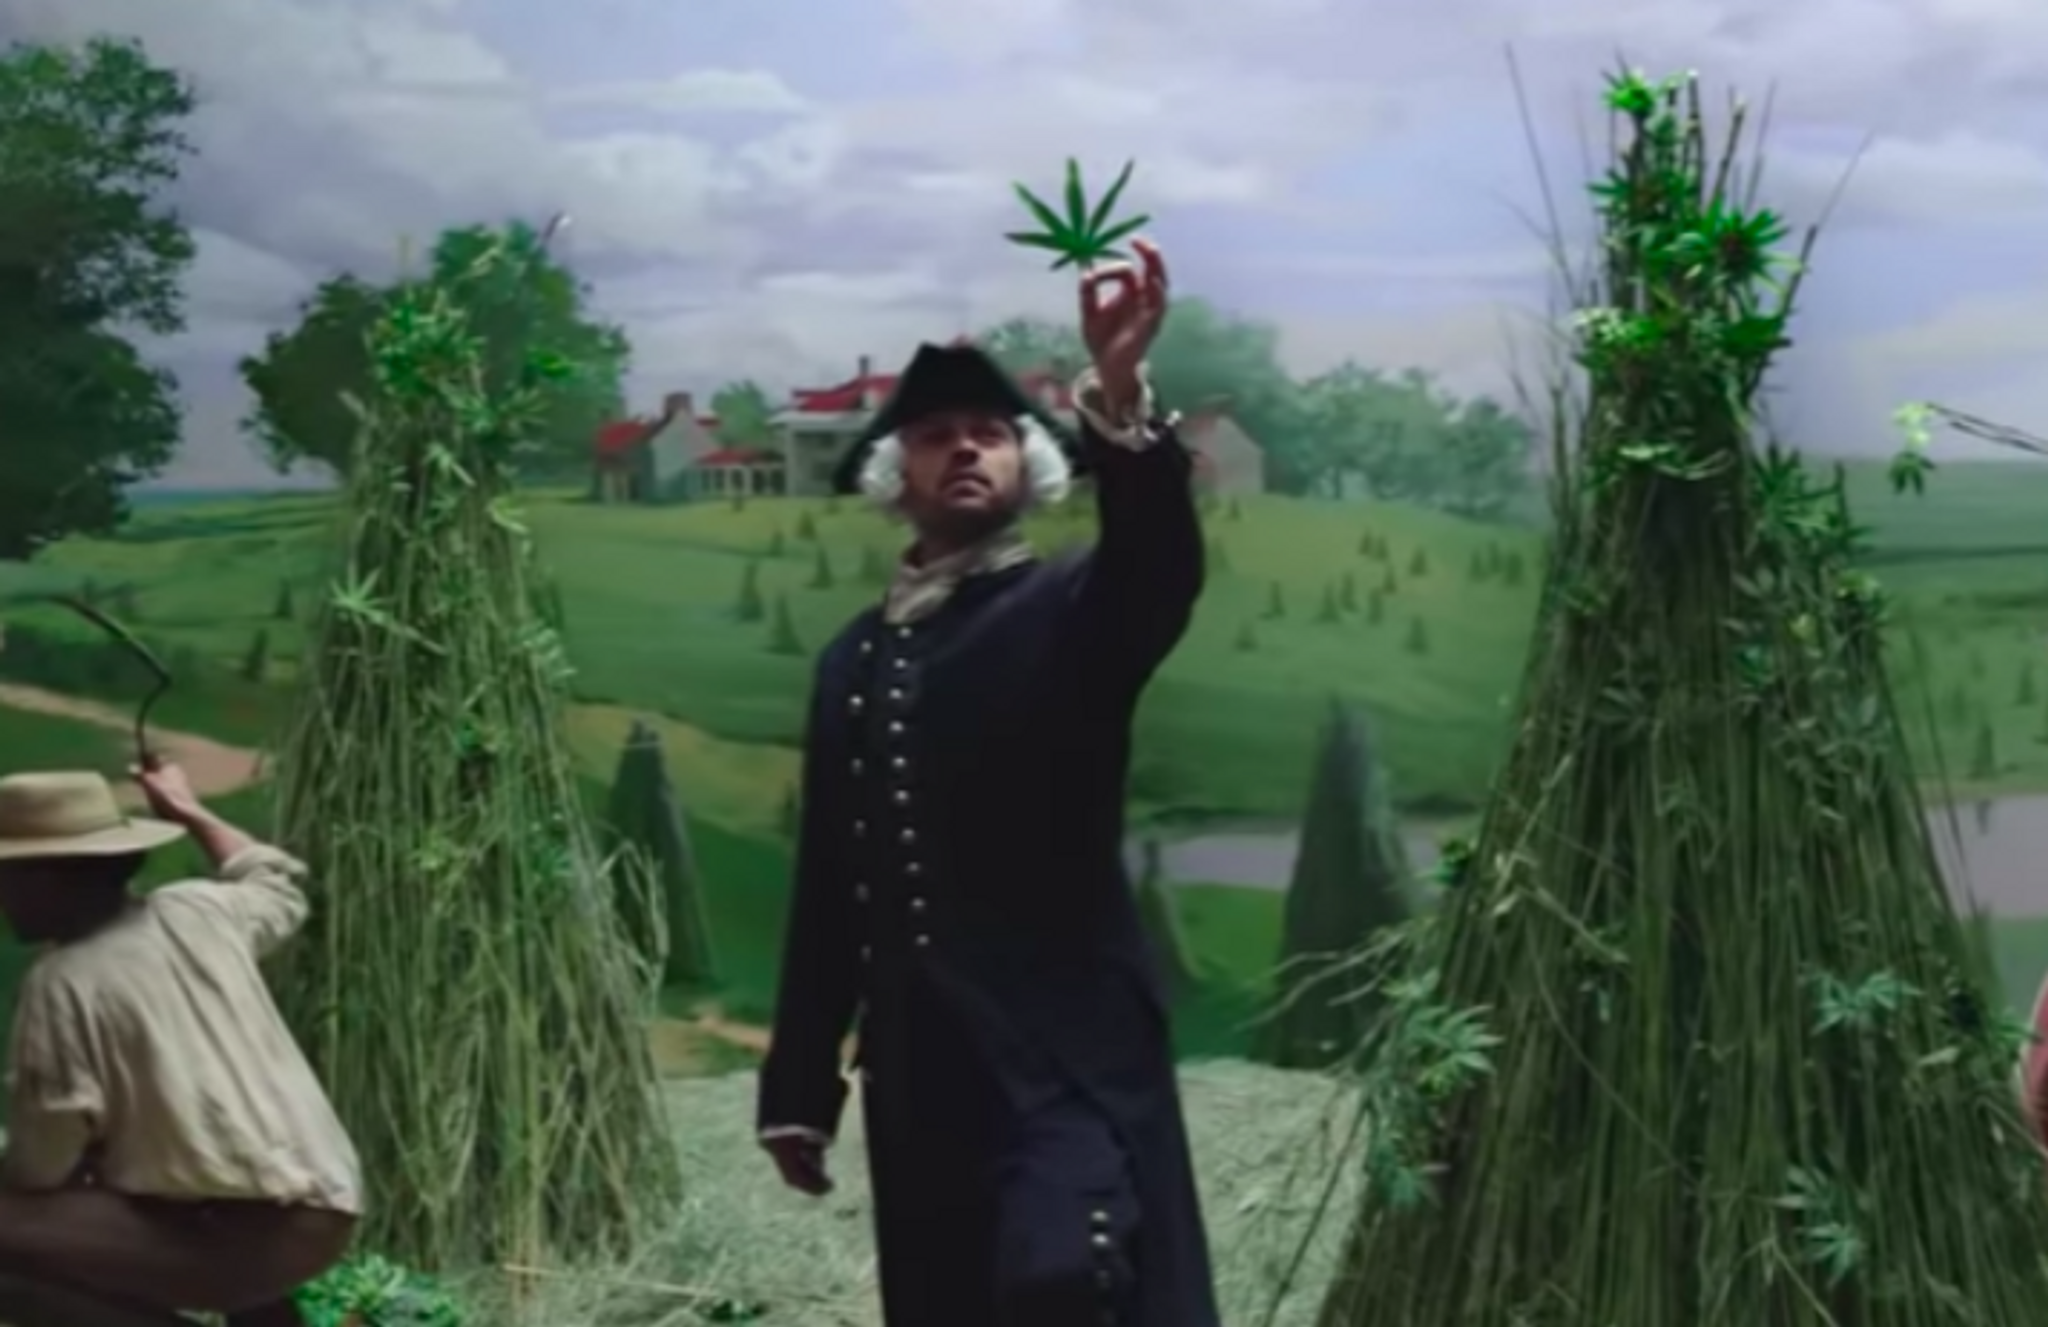 MedMen film makes cannabis a new cultural norm